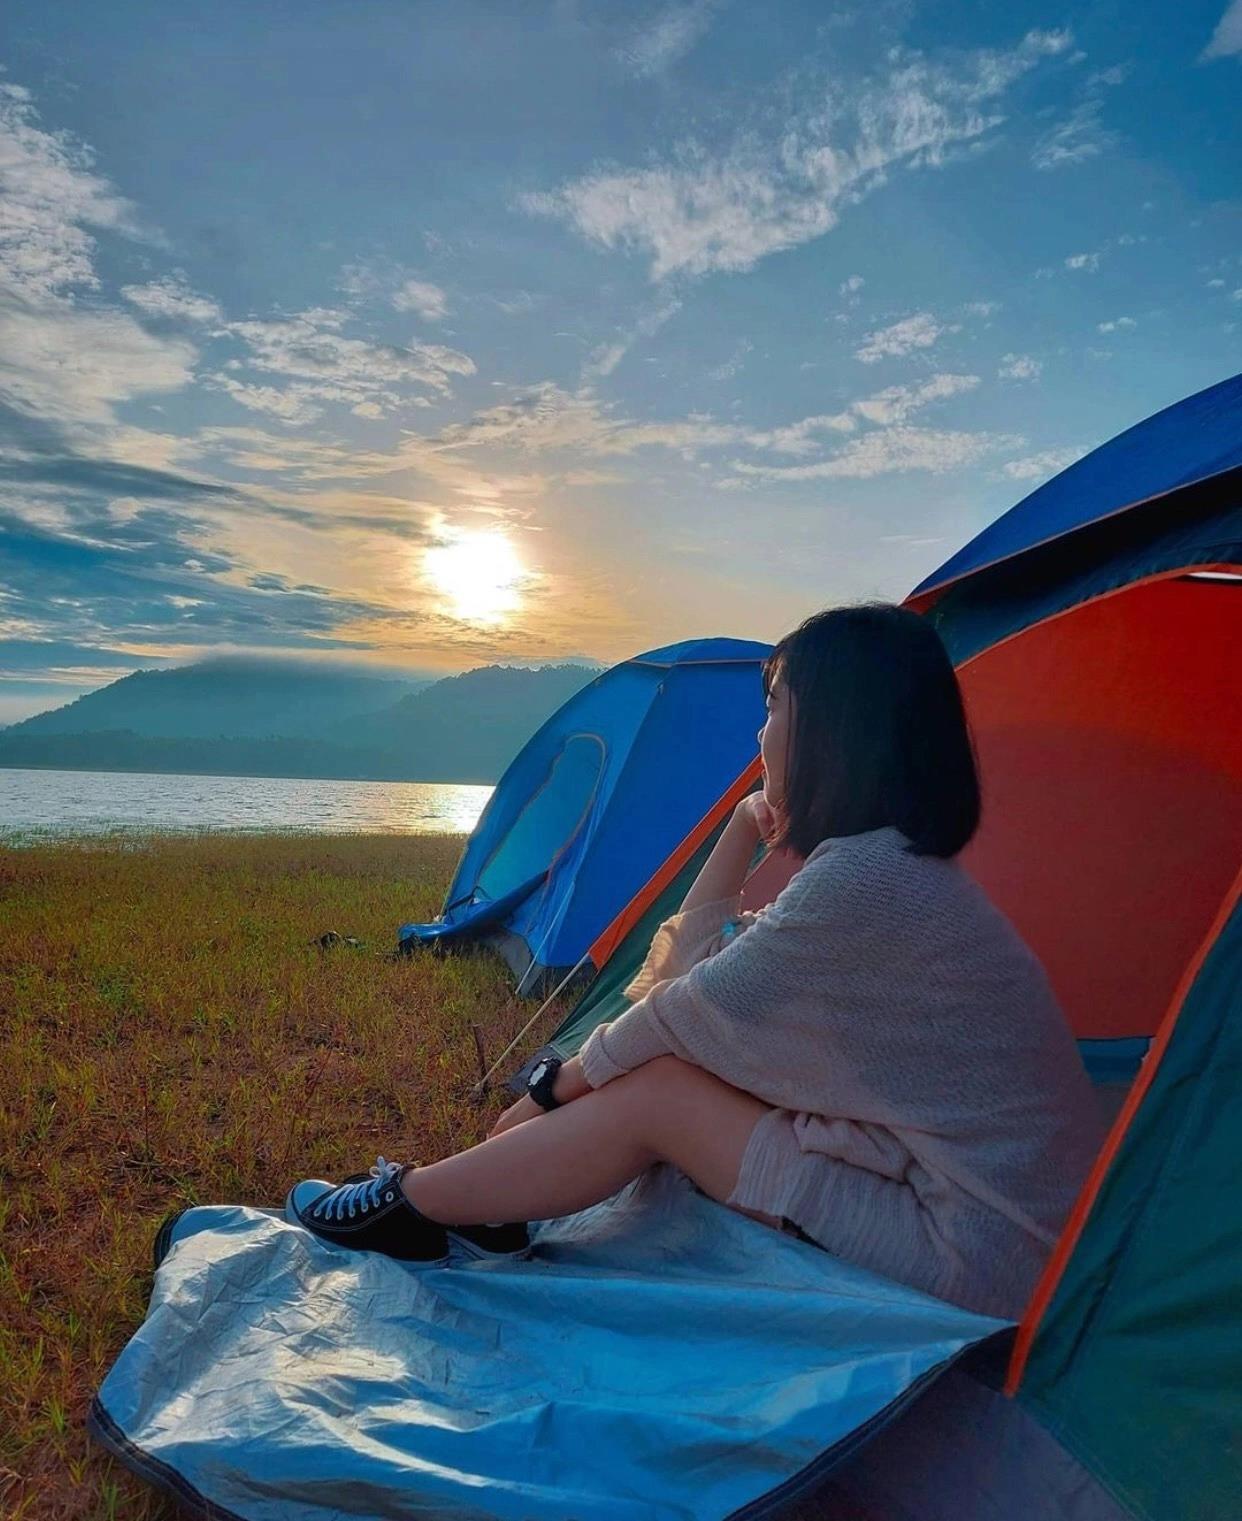 Hồ Dầu Tiếng – Địa điểm cắm trại quen thuộc ở gần TP.HCM